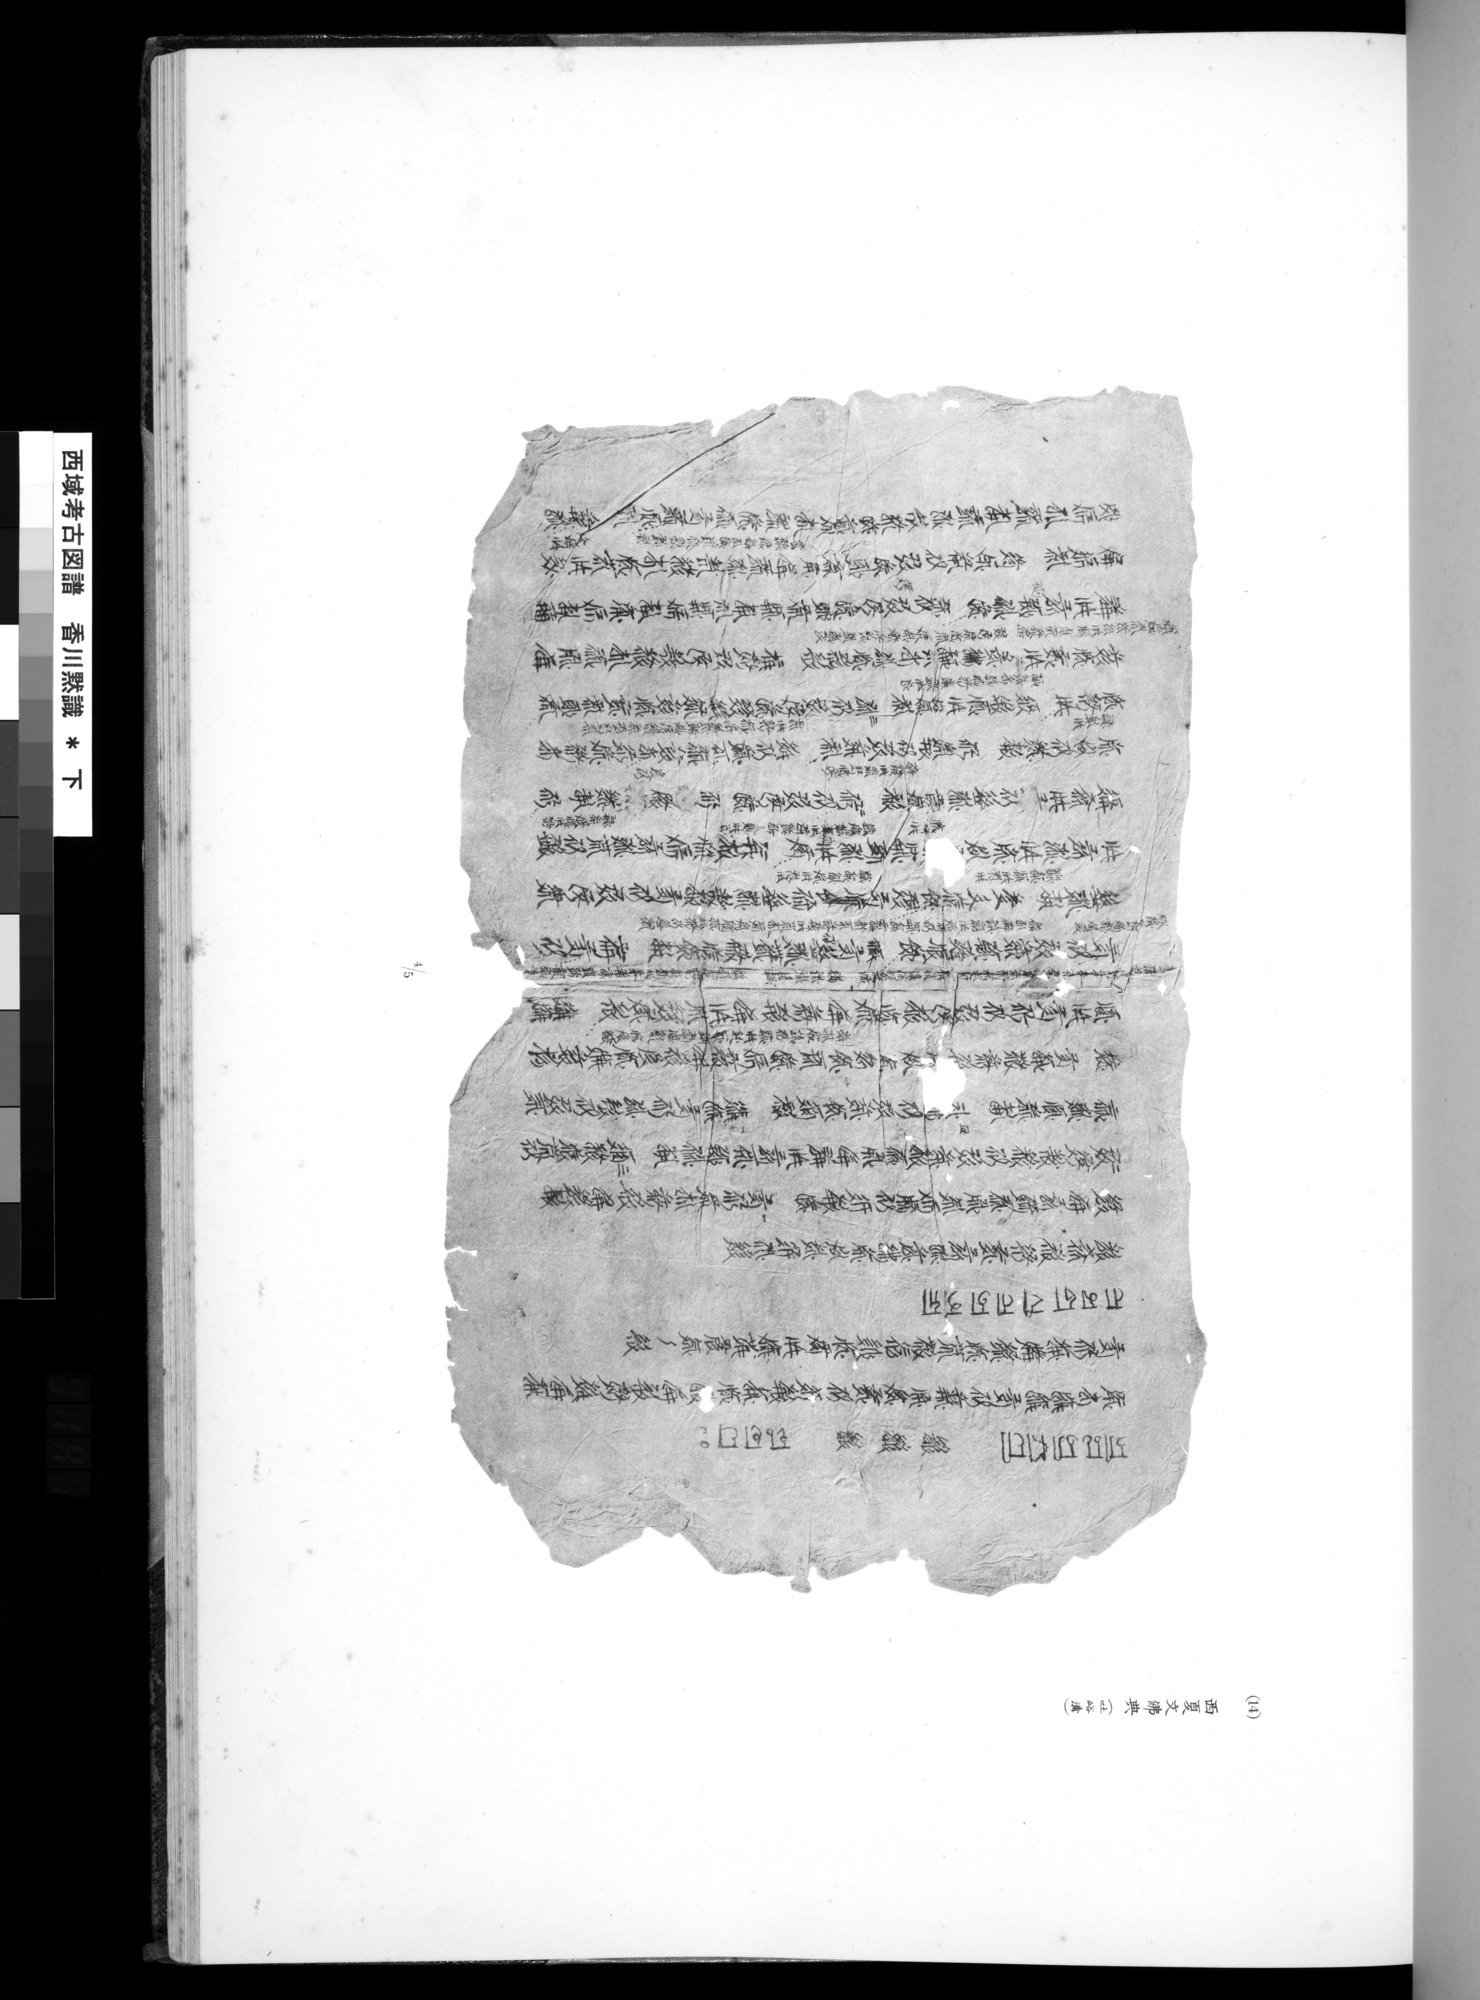 西域考古図譜 : vol.2 / Page 281 (Grayscale High Resolution Image)